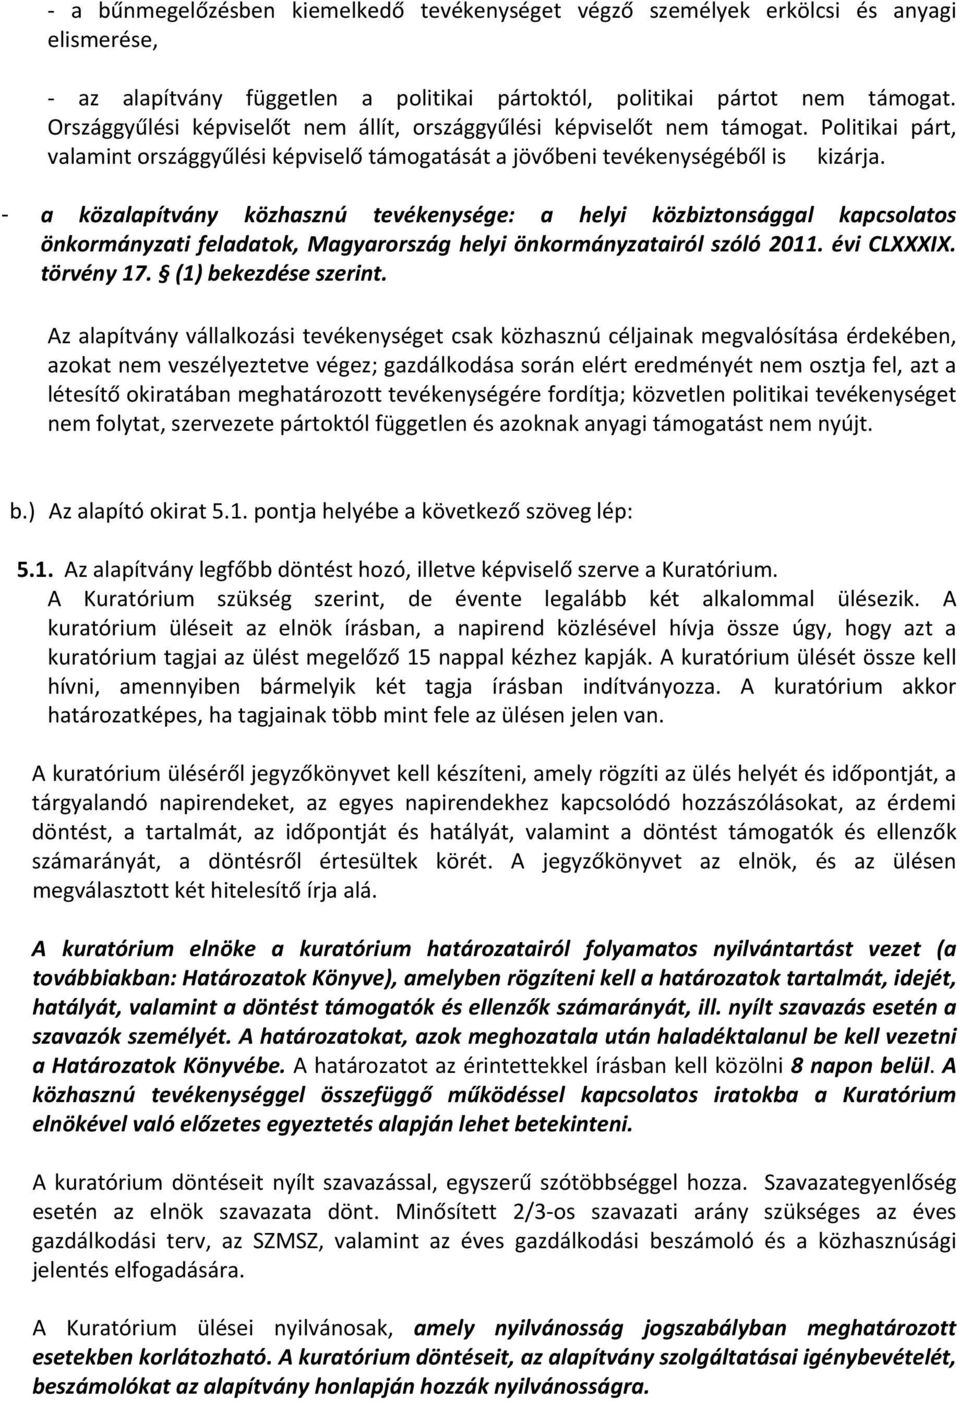 - a közalapítvány közhasznú tevékenysége: a helyi közbiztonsággal kapcsolatos önkormányzati feladatok, Magyarország helyi önkormányzatairól szóló 2011. évi CLXXXIX. törvény 17. (1) bekezdése szerint.